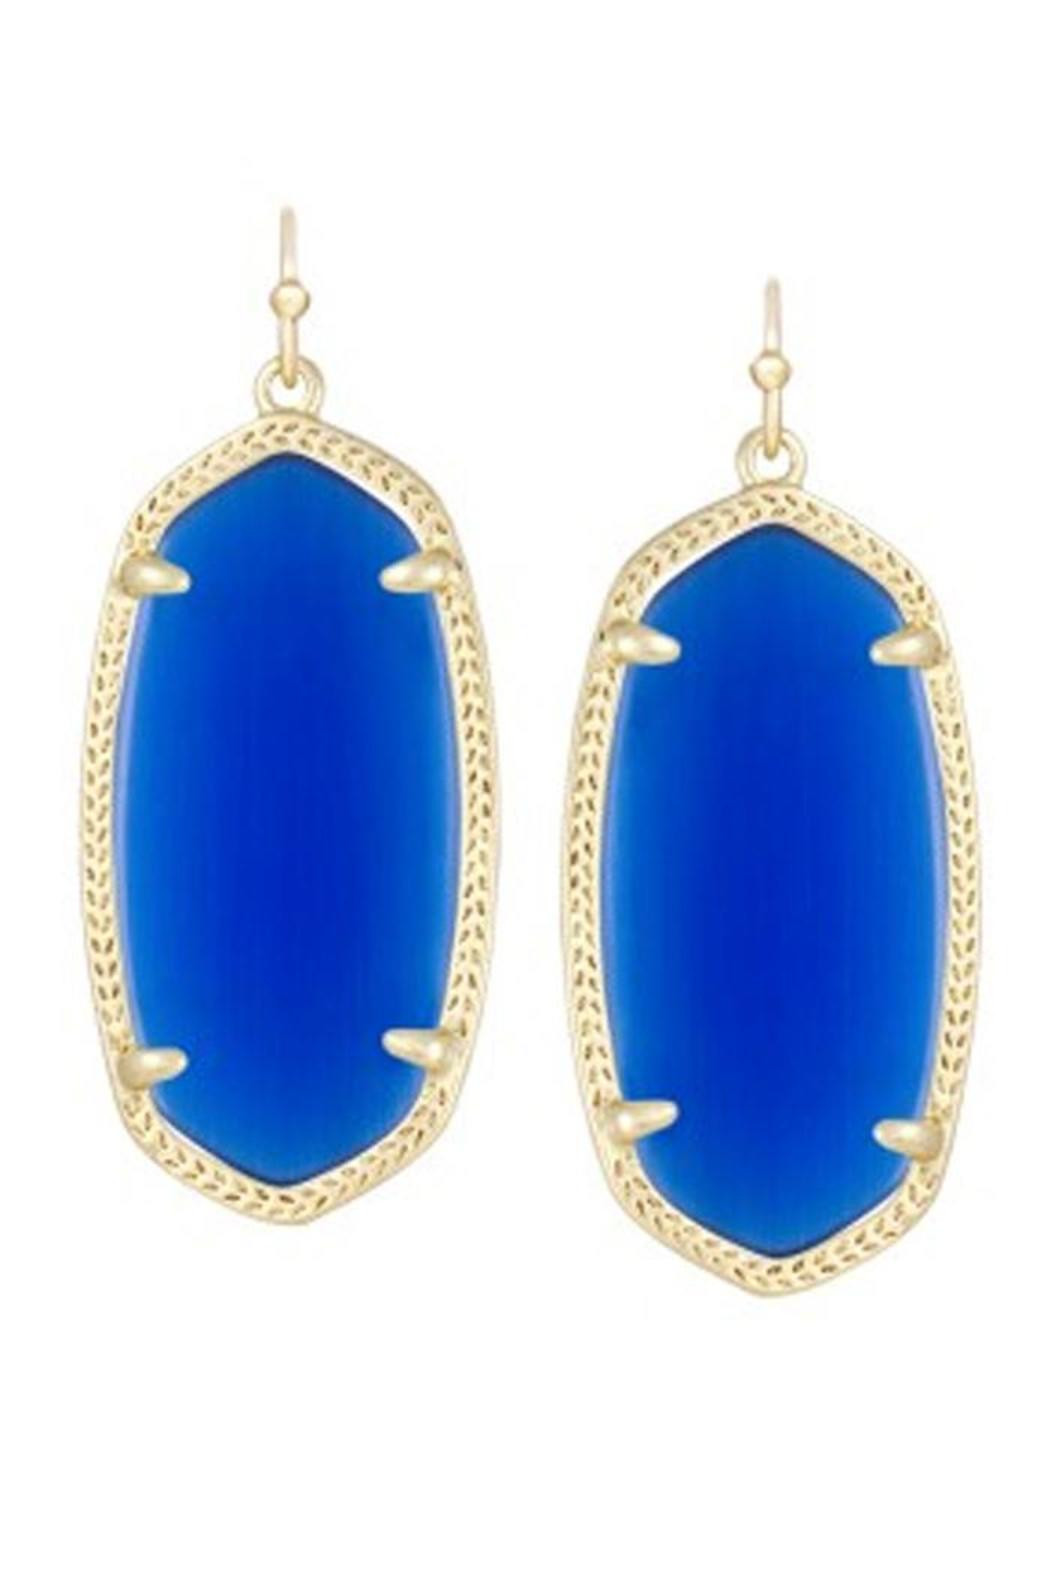 Kendra Scott Blue Earrings
 Kendra Scott Elle Cobalt Earrings from Lafayette by